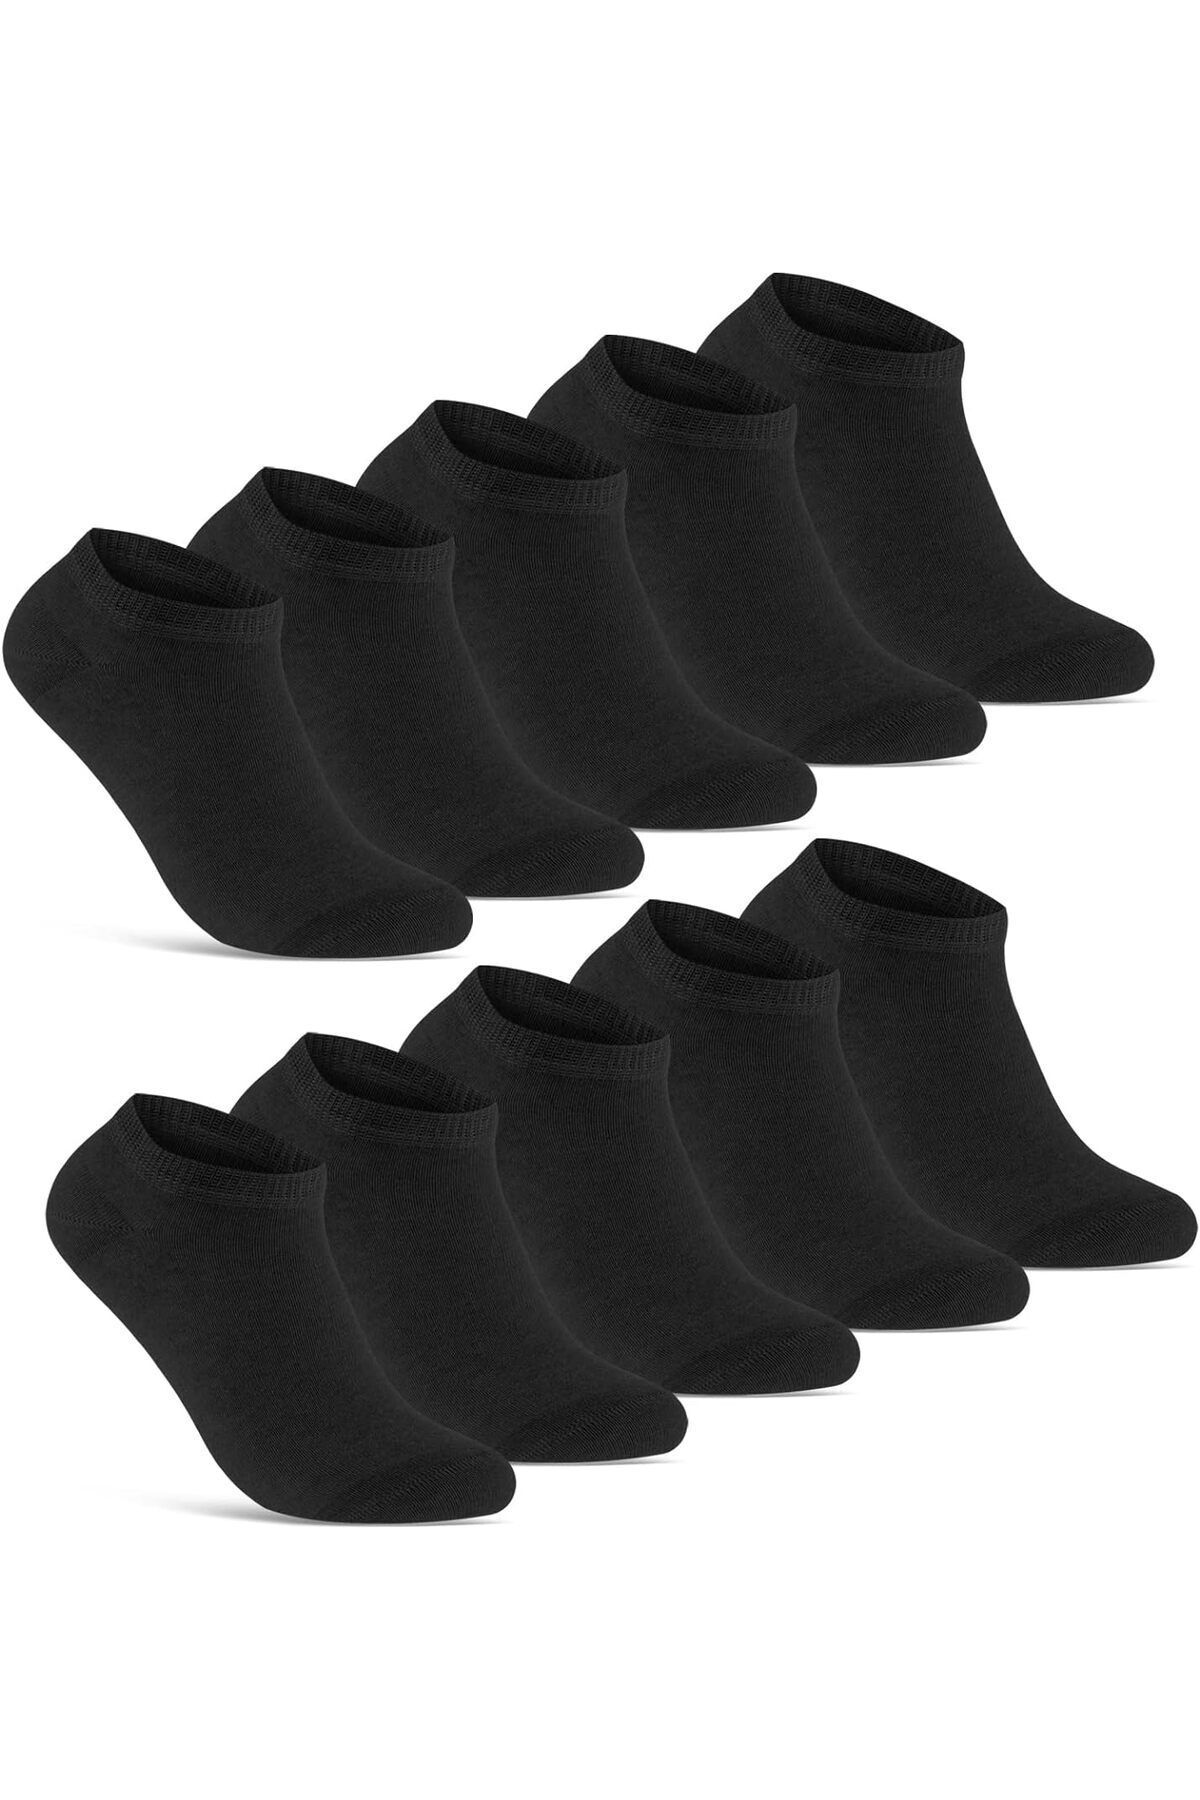 SOCKSHION Pamuklu Patik Bilek Boy Çorap Patik Çorap Siyah Renk 10 Çift